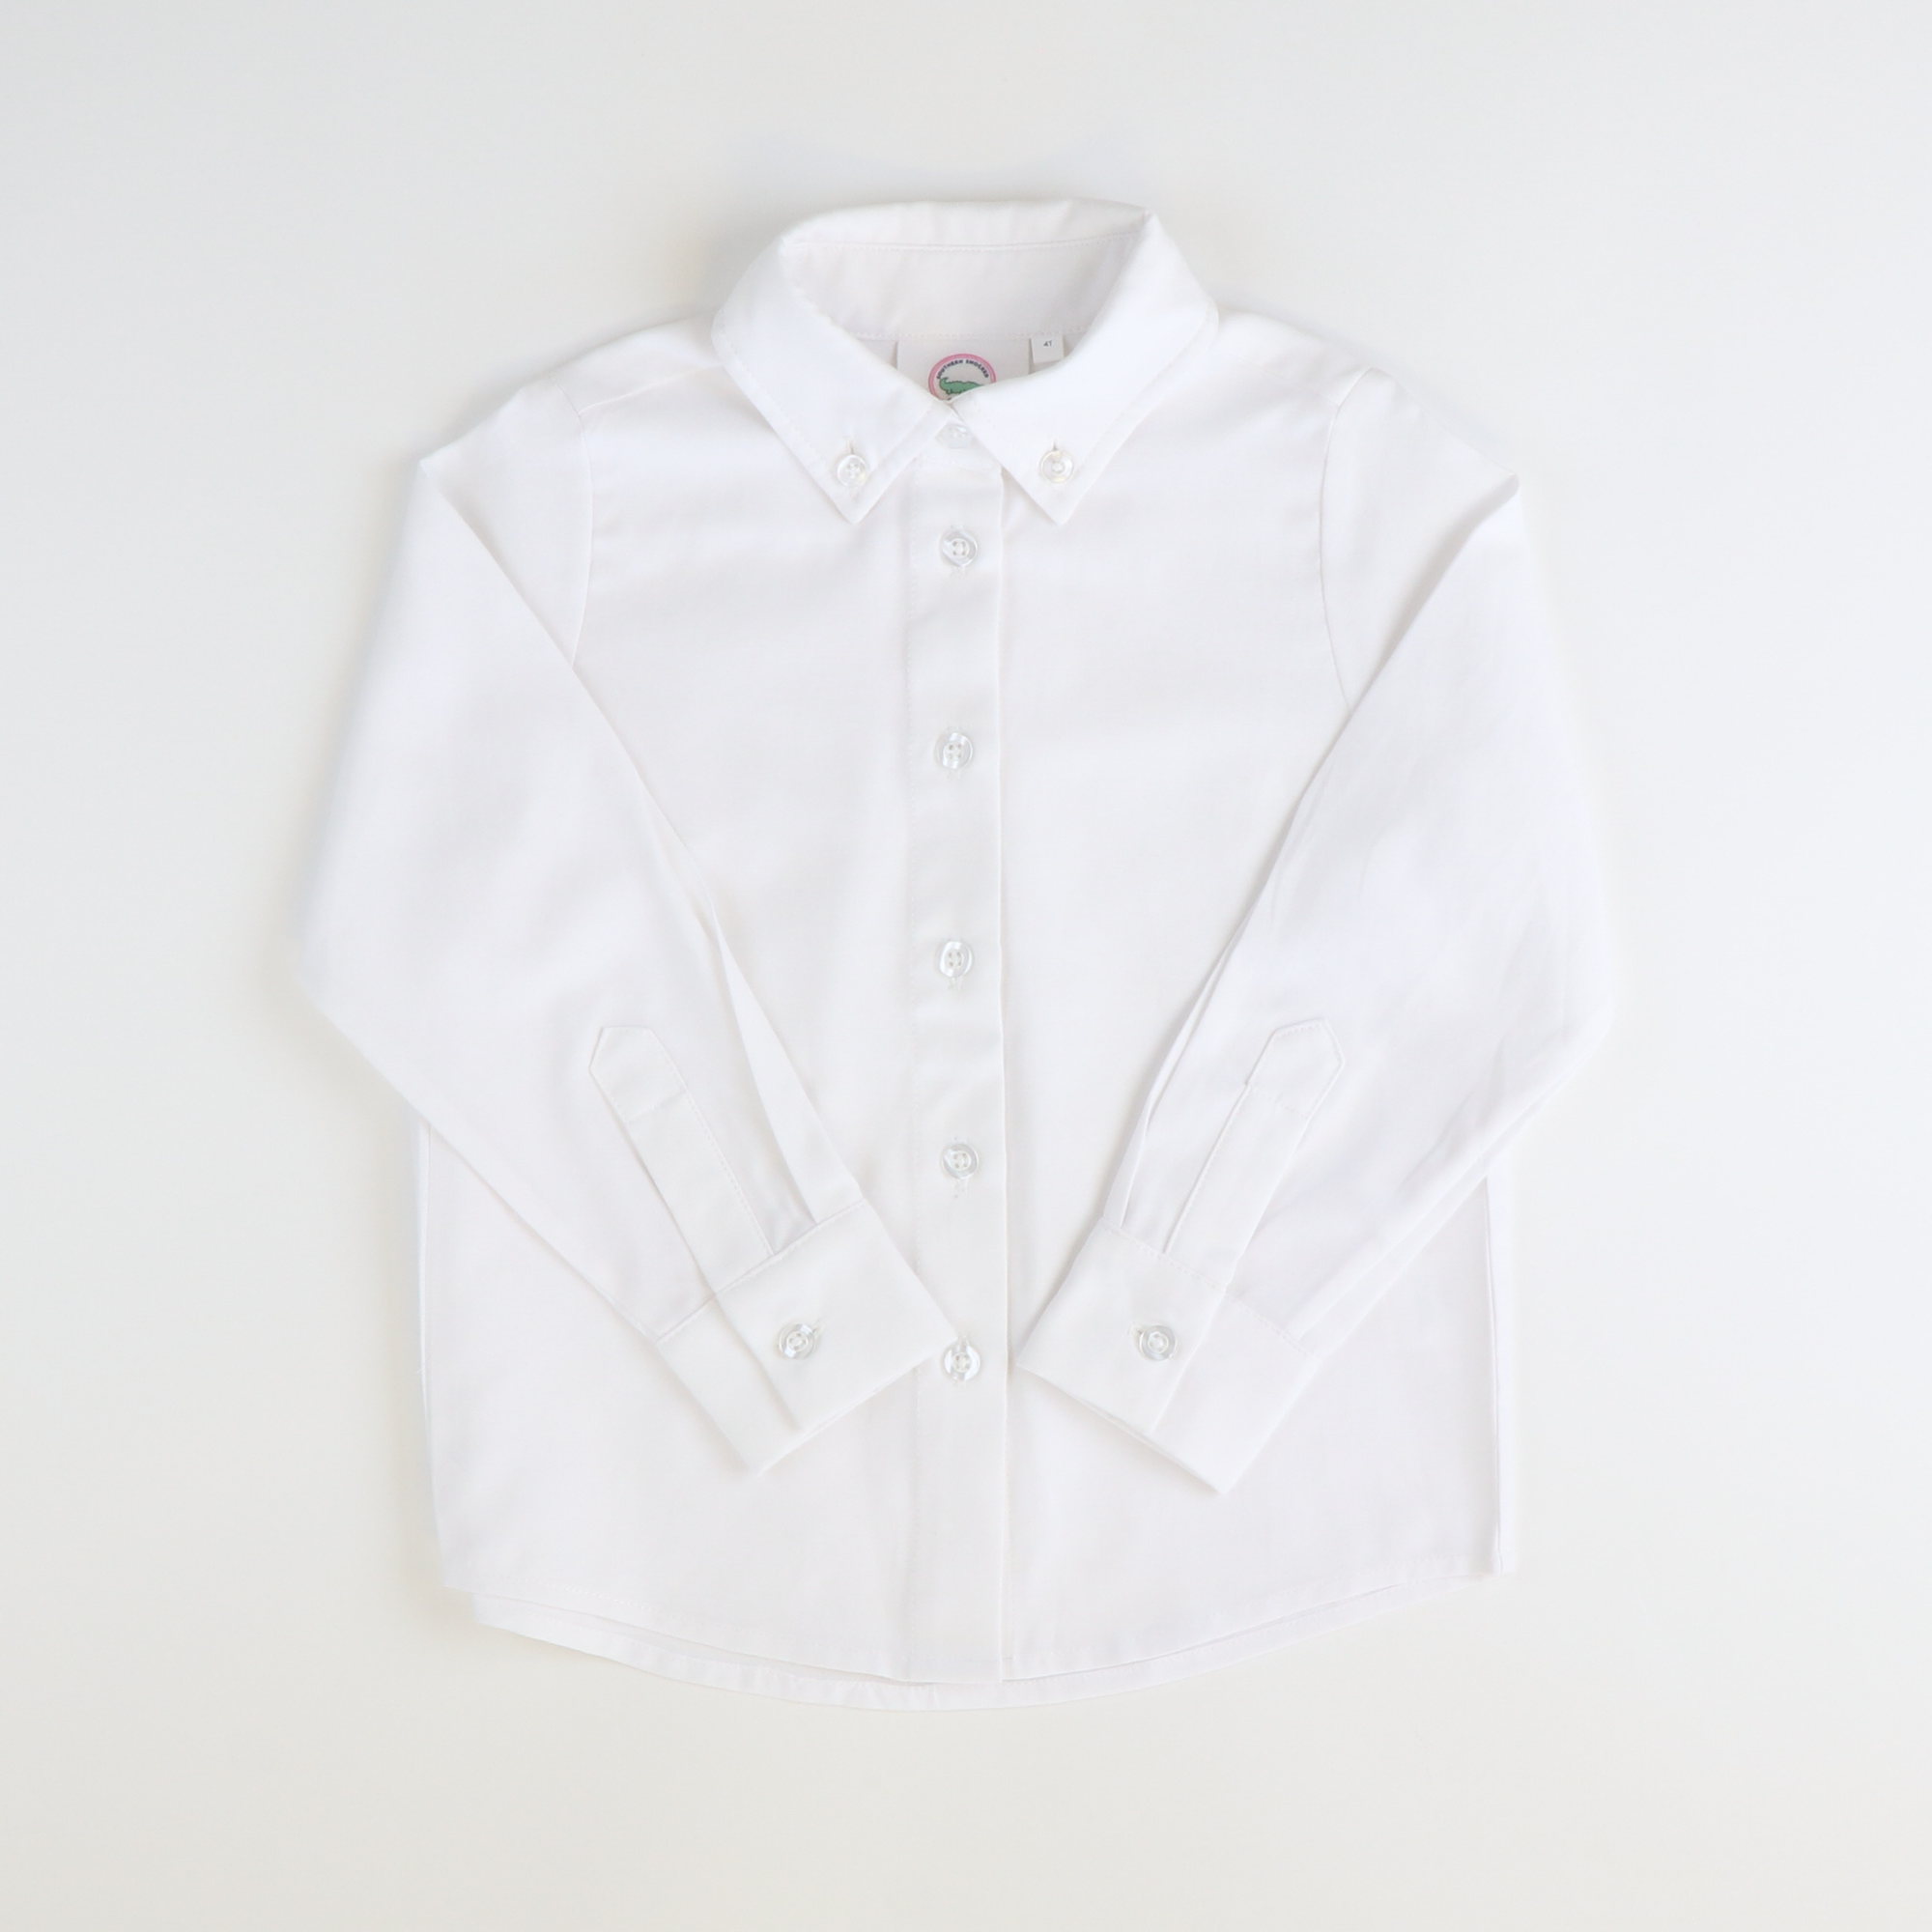 Boys L/S Button Down Shirt - White Oxford